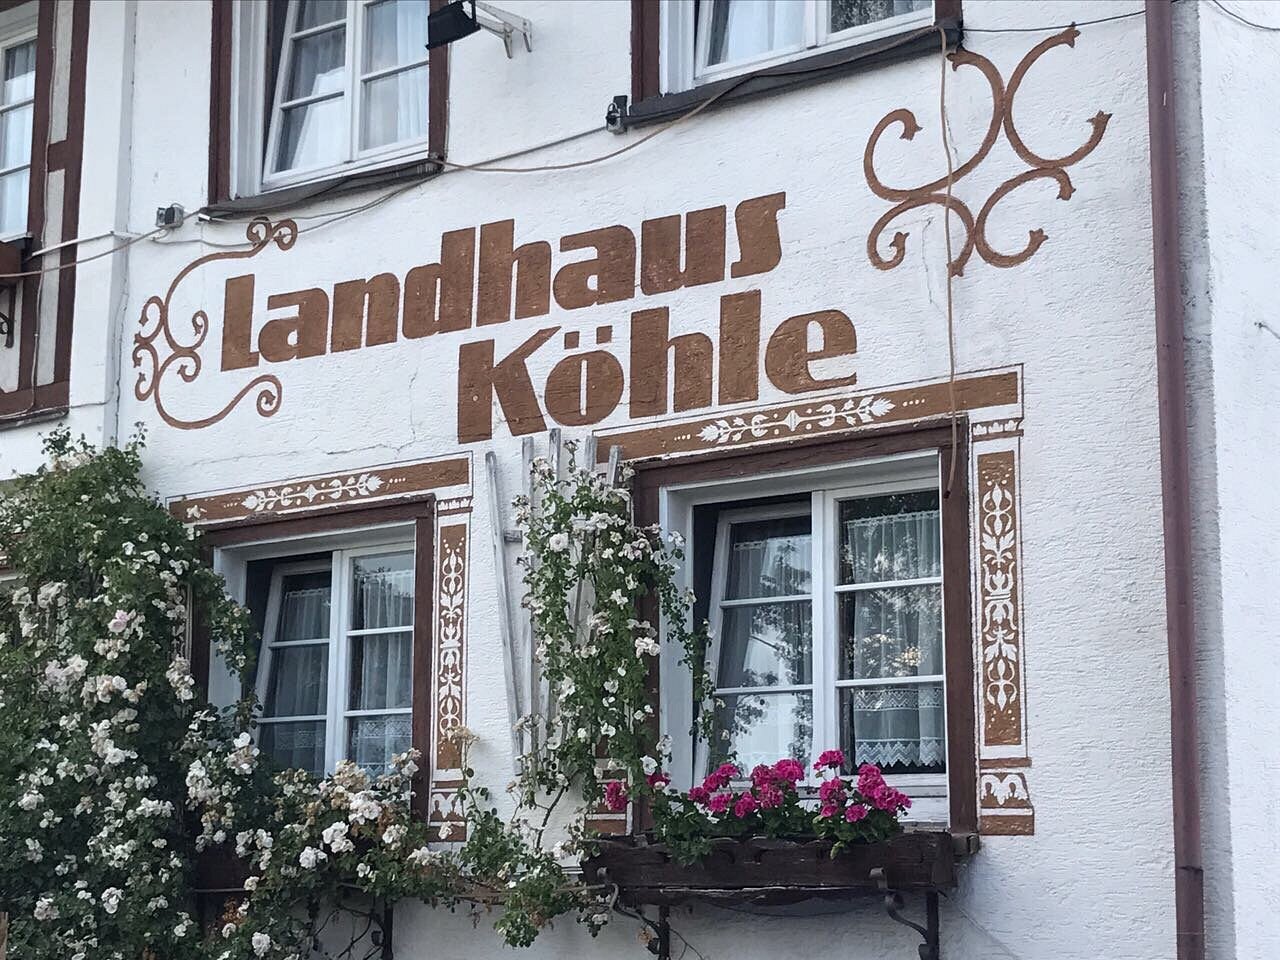 Hotel Restaurant Landhaus Köhle image